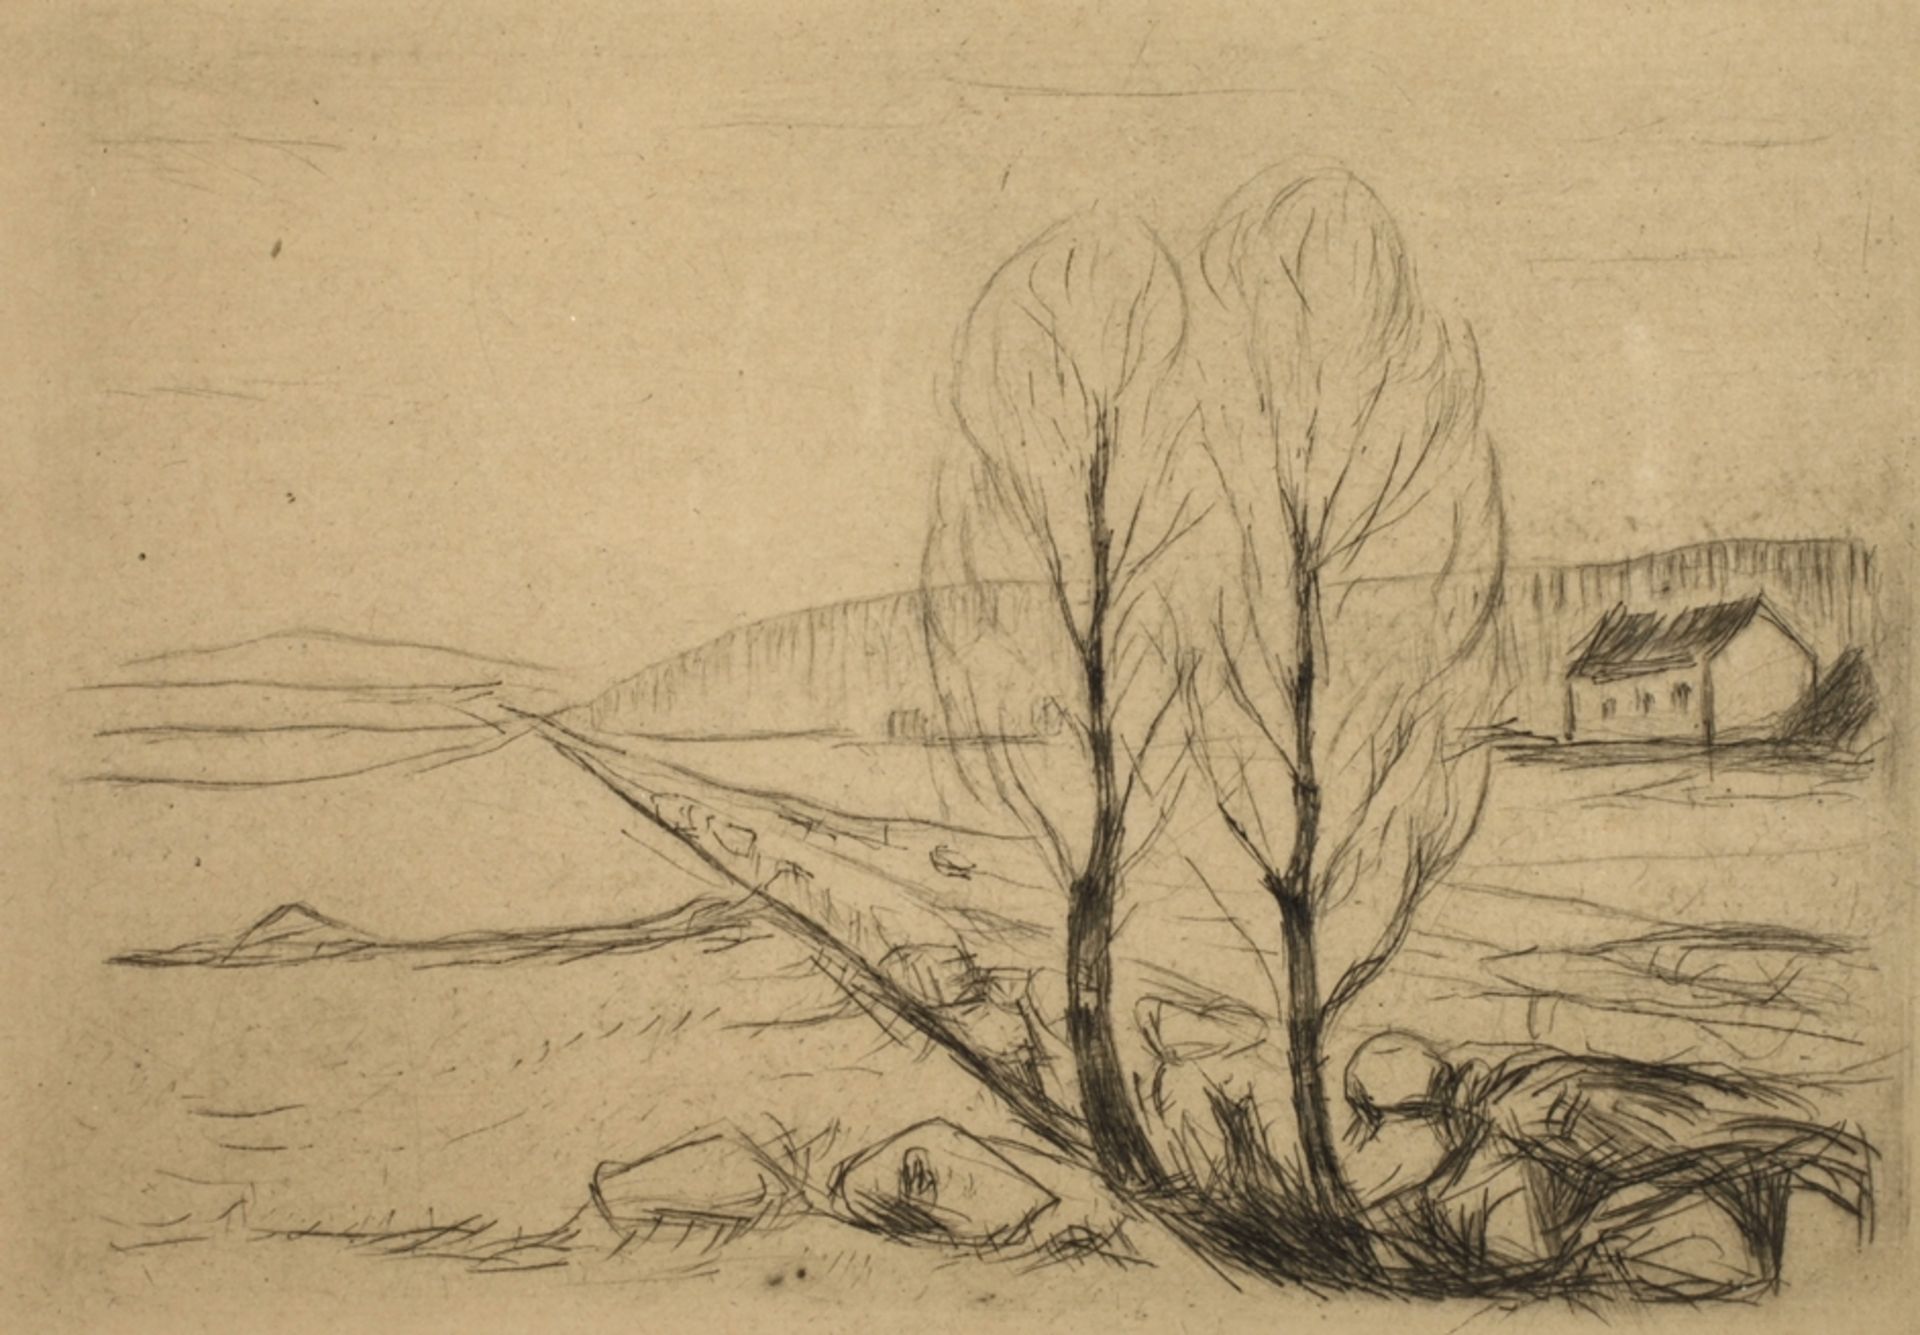 Edvard Munch, "Norwegische Landschaft"